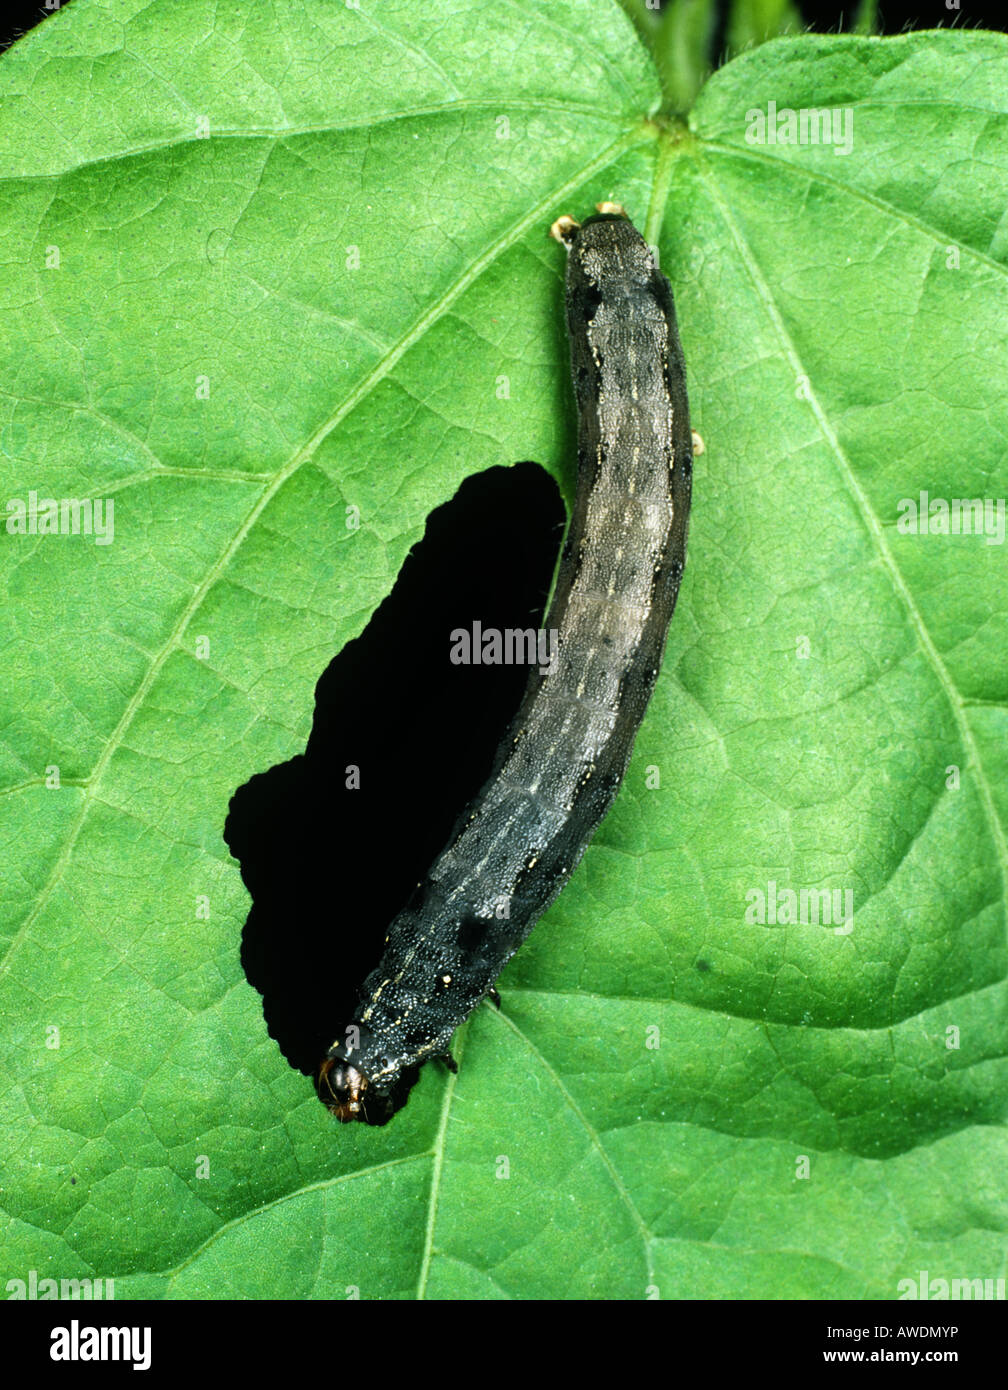 Cotton leafworm Spodoptera littoralis caterpillar feeding on a cotton leaf Stock Photo